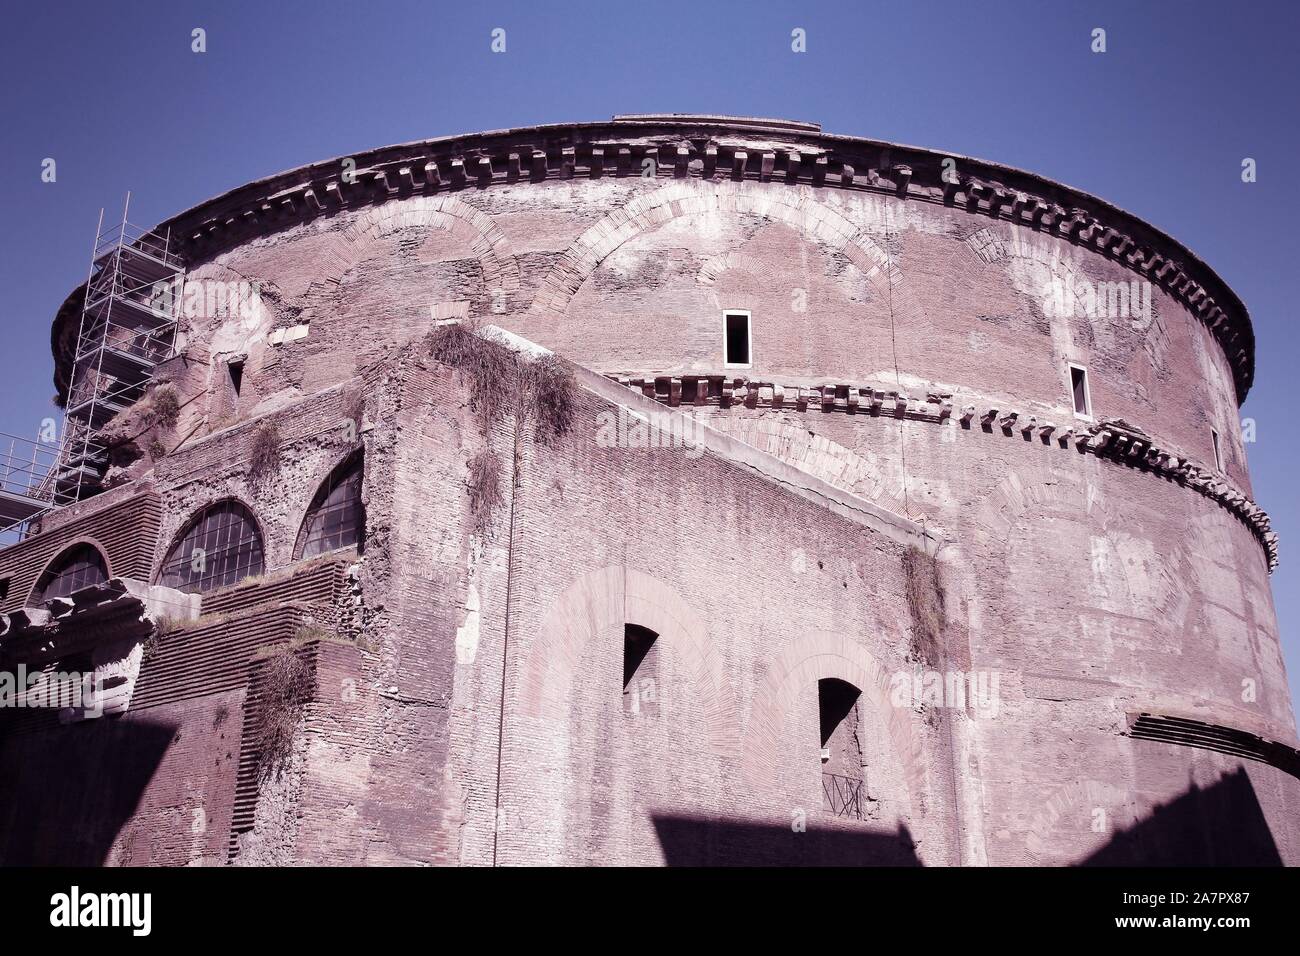 Rome, Italie - Panthéon, célèbre ancienne église avec plus grand dôme en béton non armé dans le monde. Les couleurs traitées - style retro droit filtered Banque D'Images